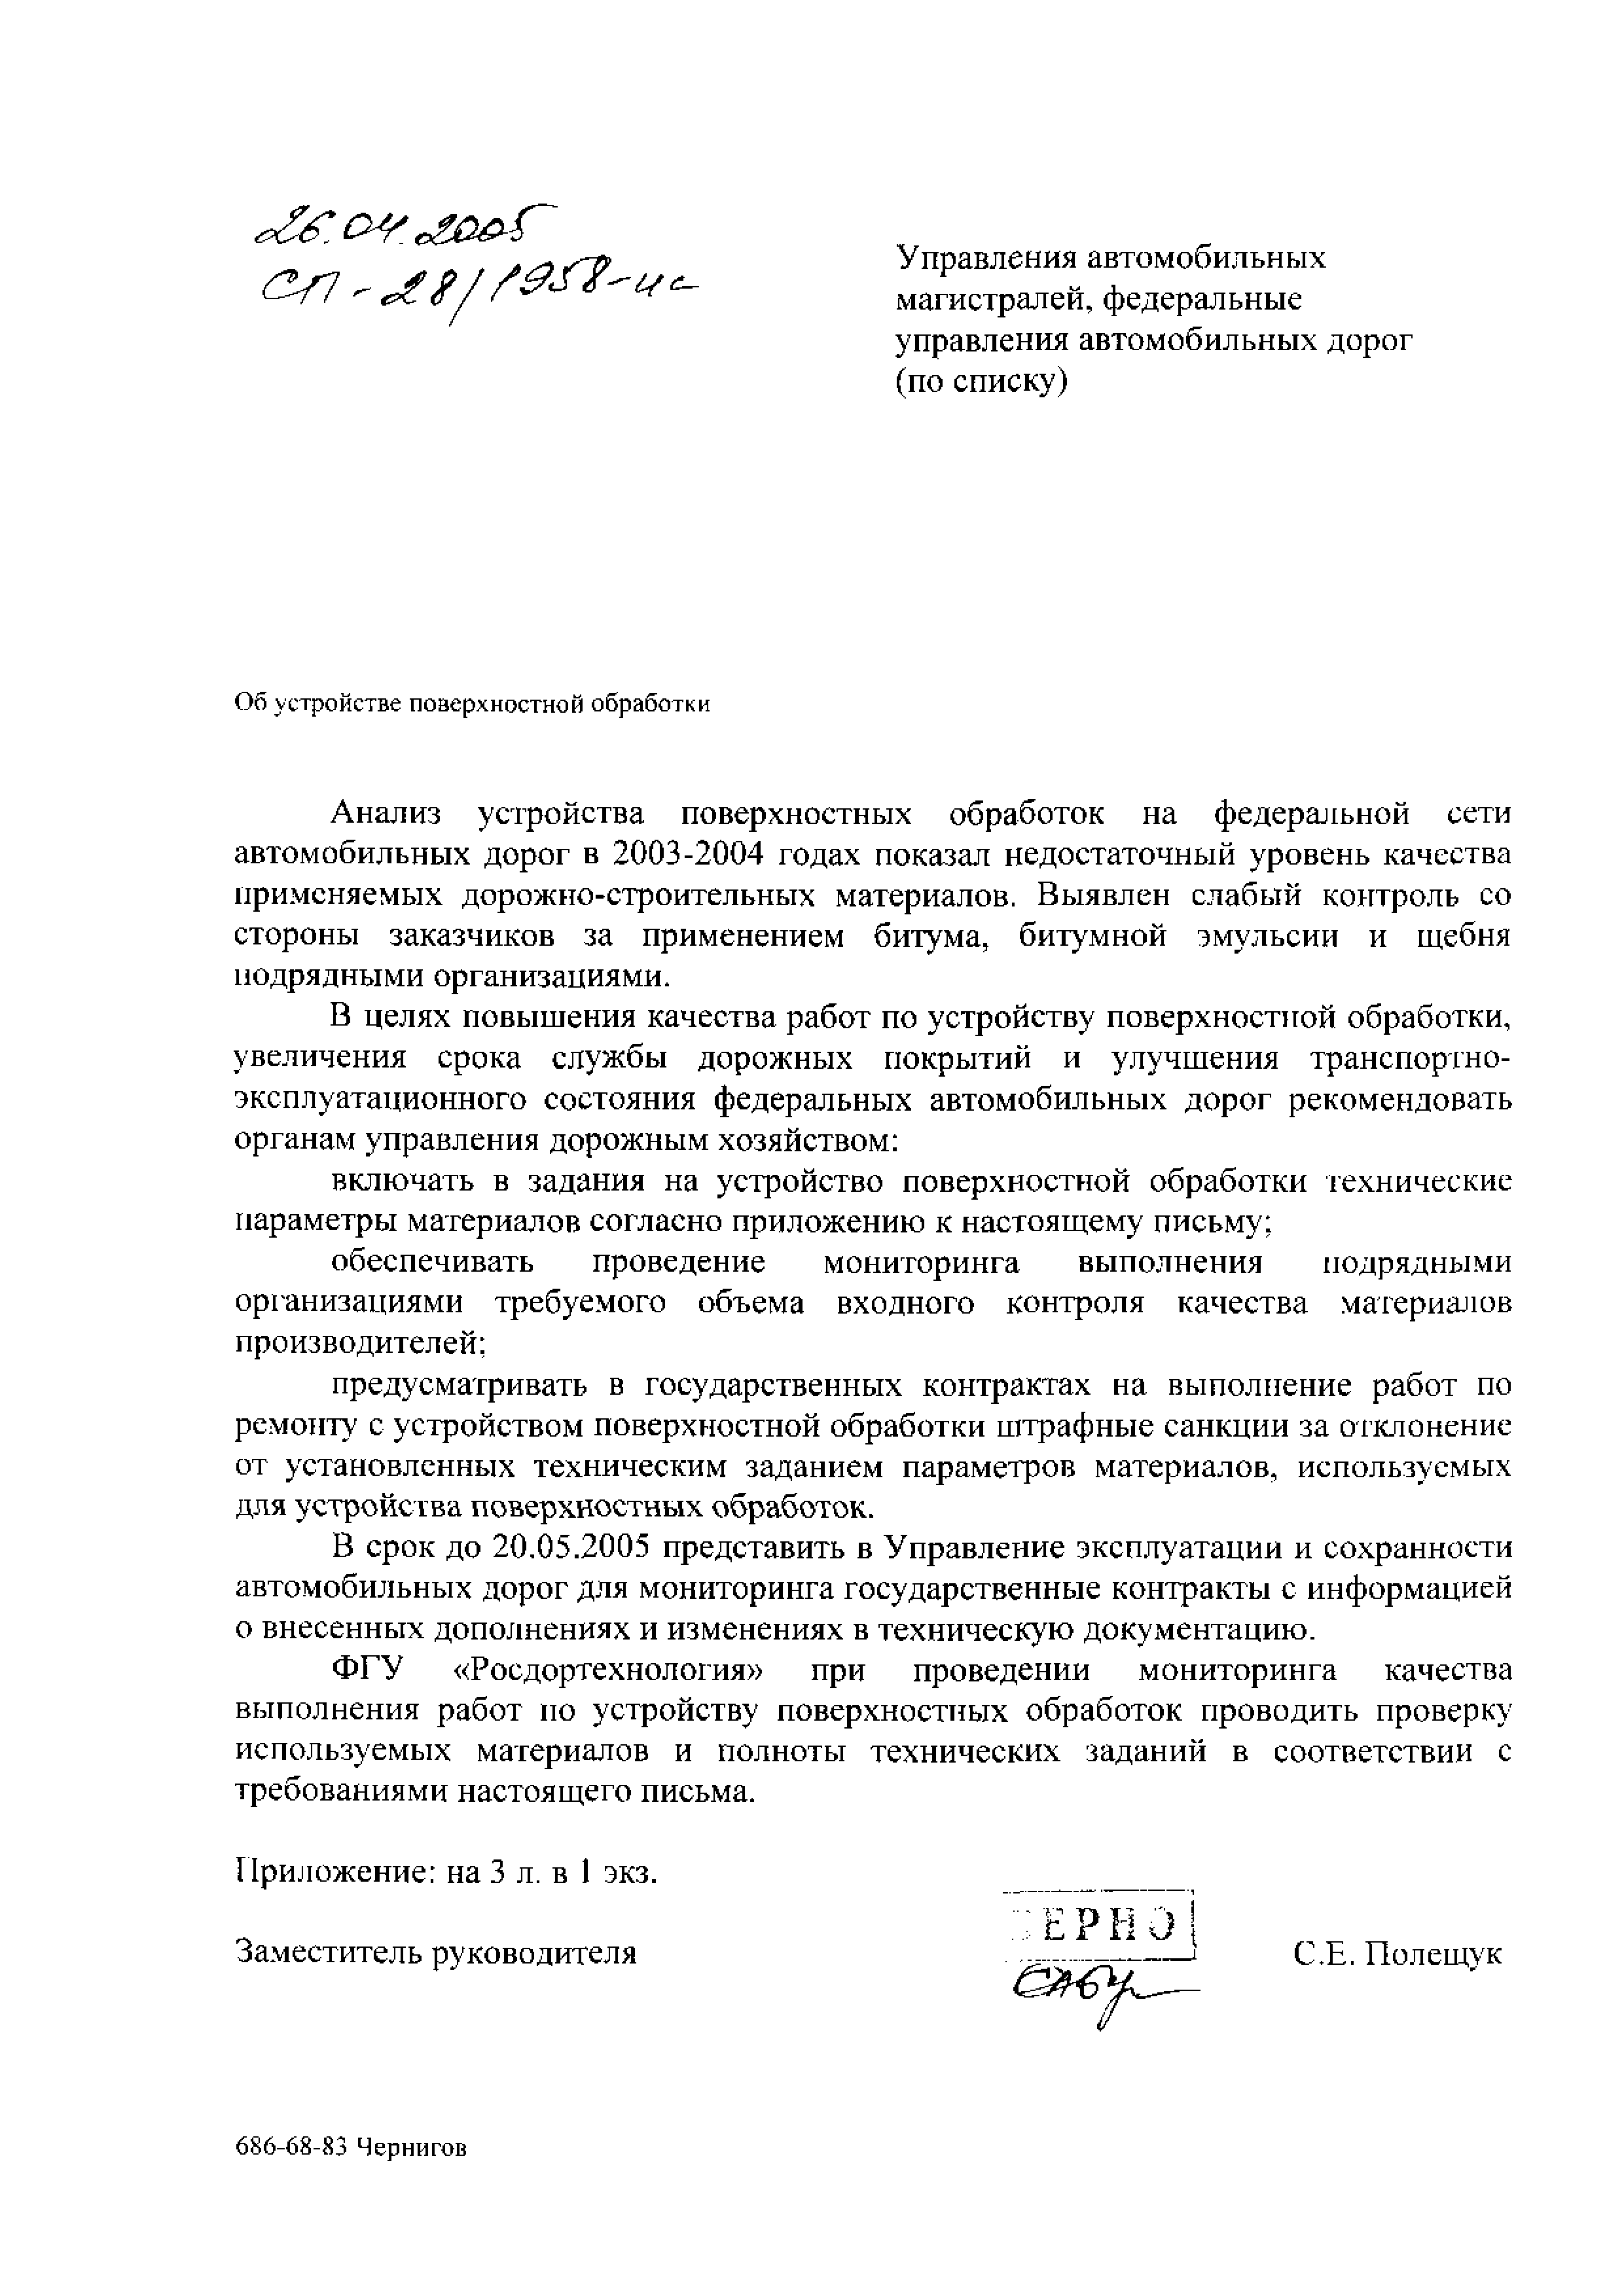 Письмо СП-28/1958-ис